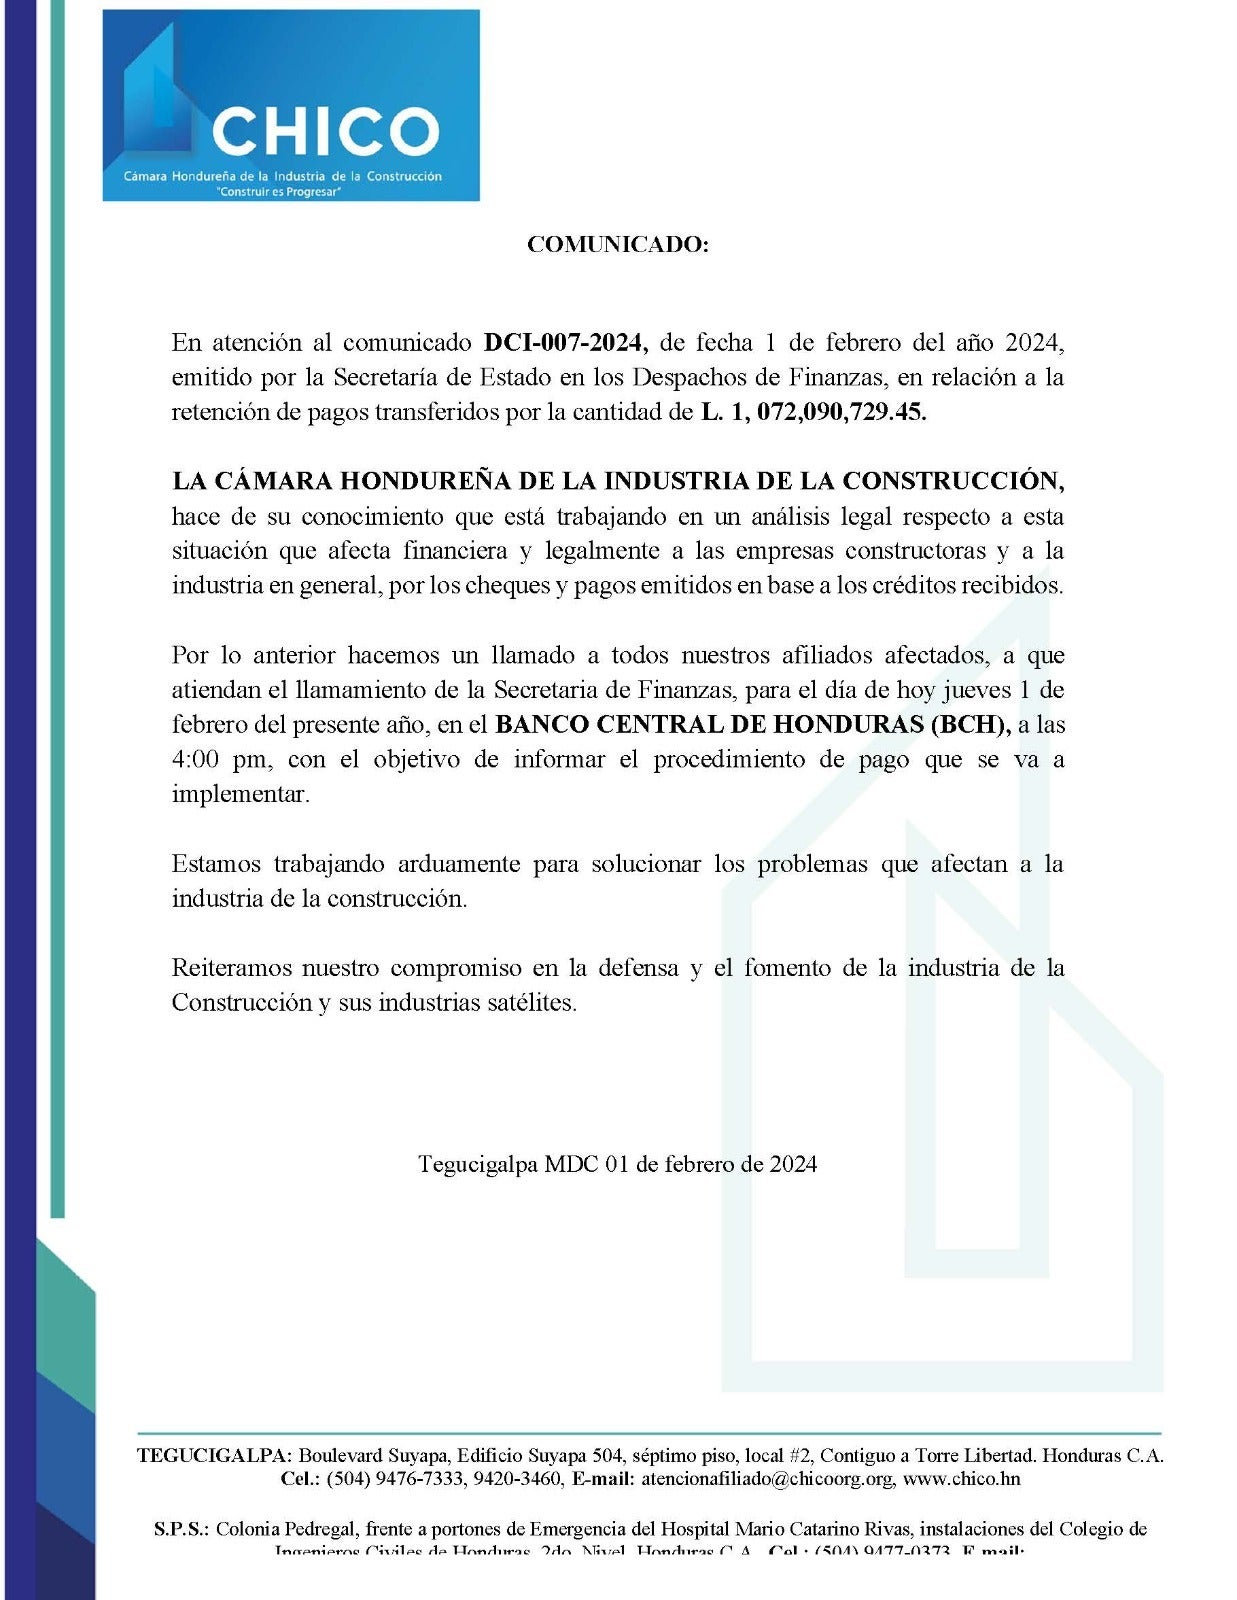 CHICO analiza legalmente impacto sobre retención de pagos a contratistas por la Sefín